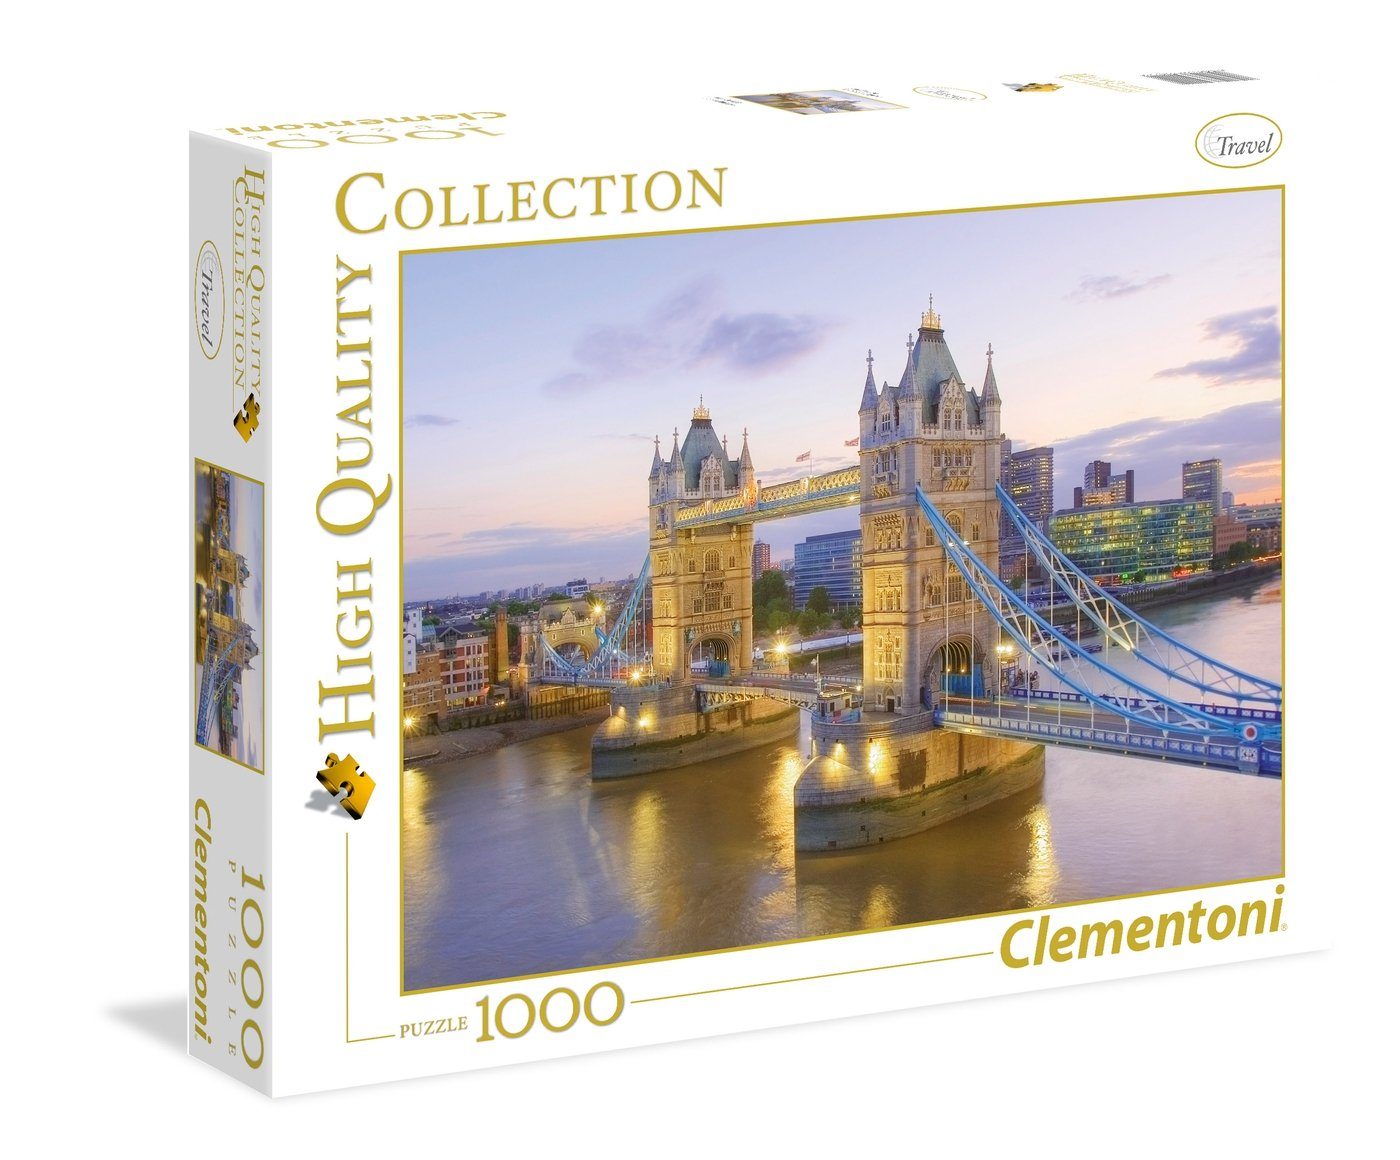 39022 Clementoni Teile 1000 Puzzle, 1000 Bridge Puzzleteile Clementoni® Puzzle Tower